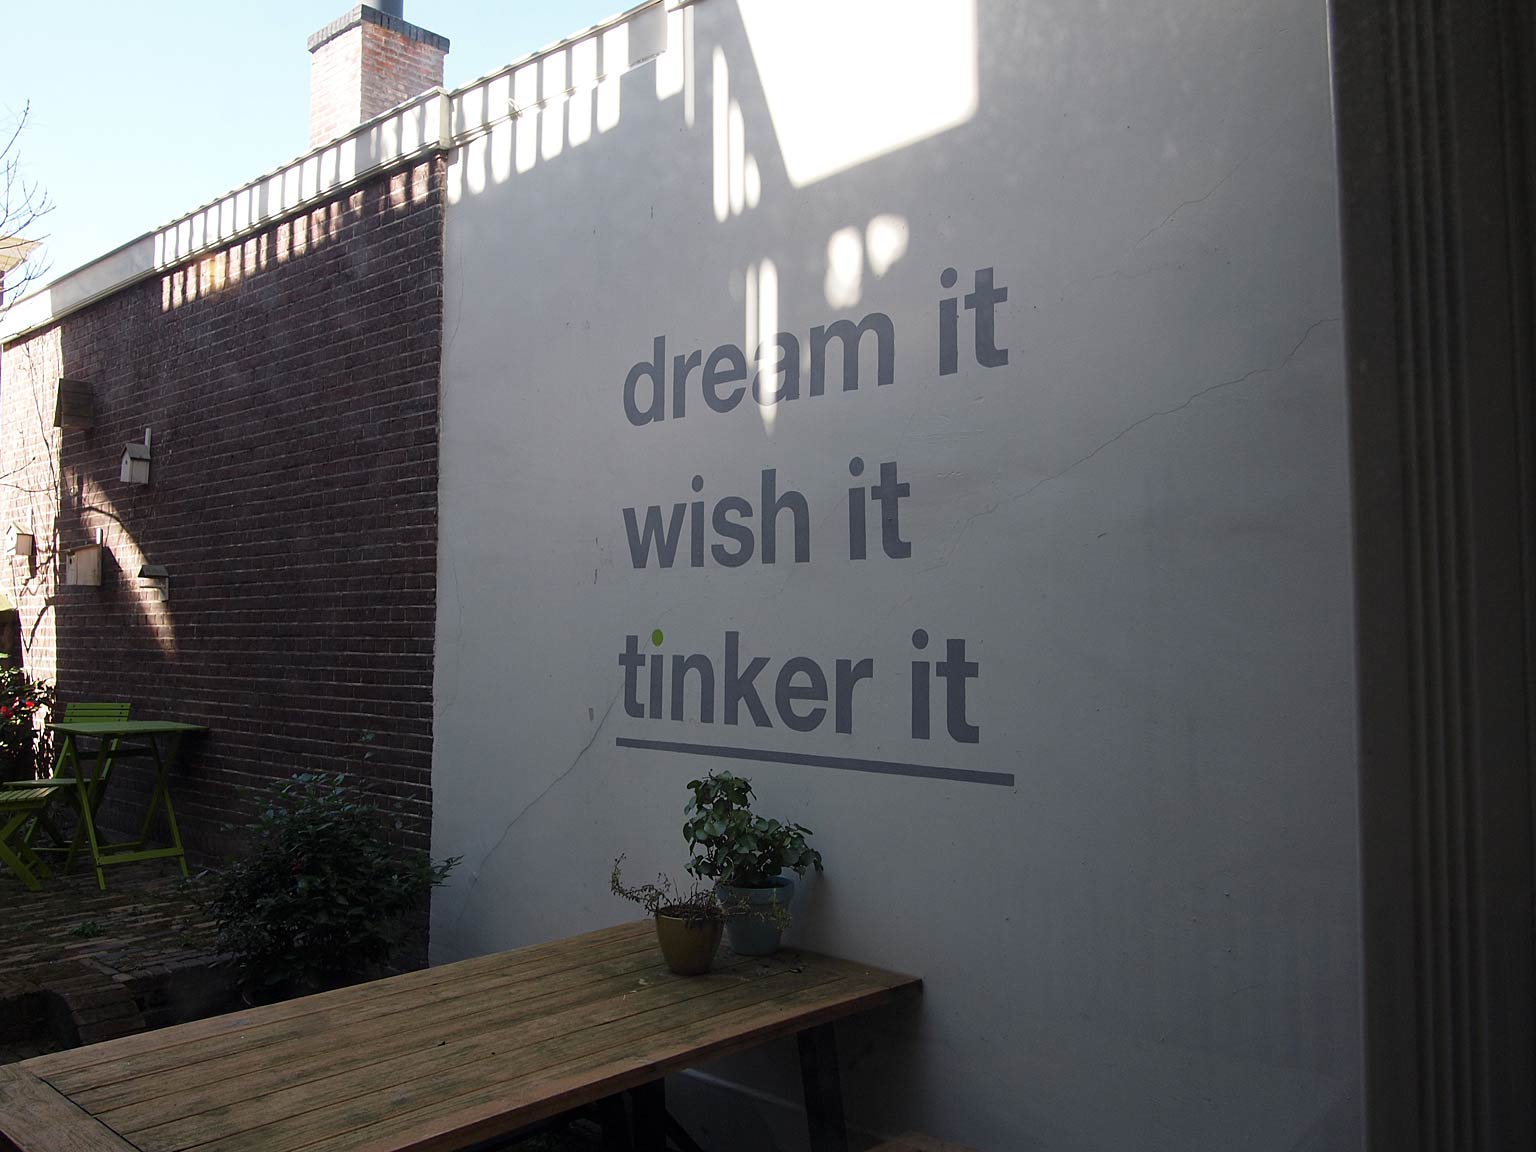 Dream it / wish it / Tinker it